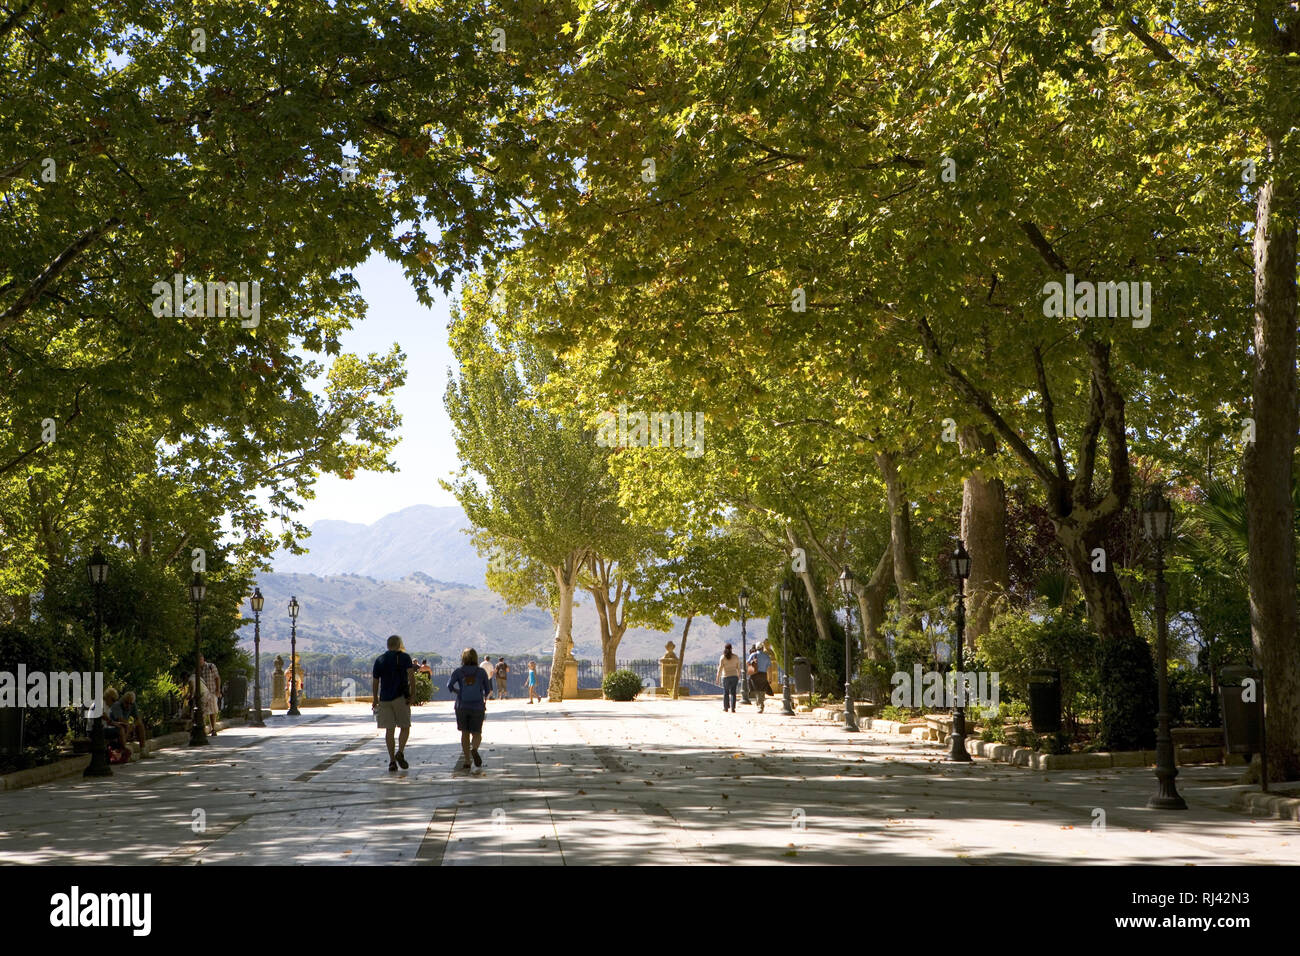 Spanien, Ronda, historisches St?dtchen, Garten 'Jardines de Cuenca', Besucher, Spaziergang, Blick auf die Berglandschaft Serrania de Ronda, Stock Photo